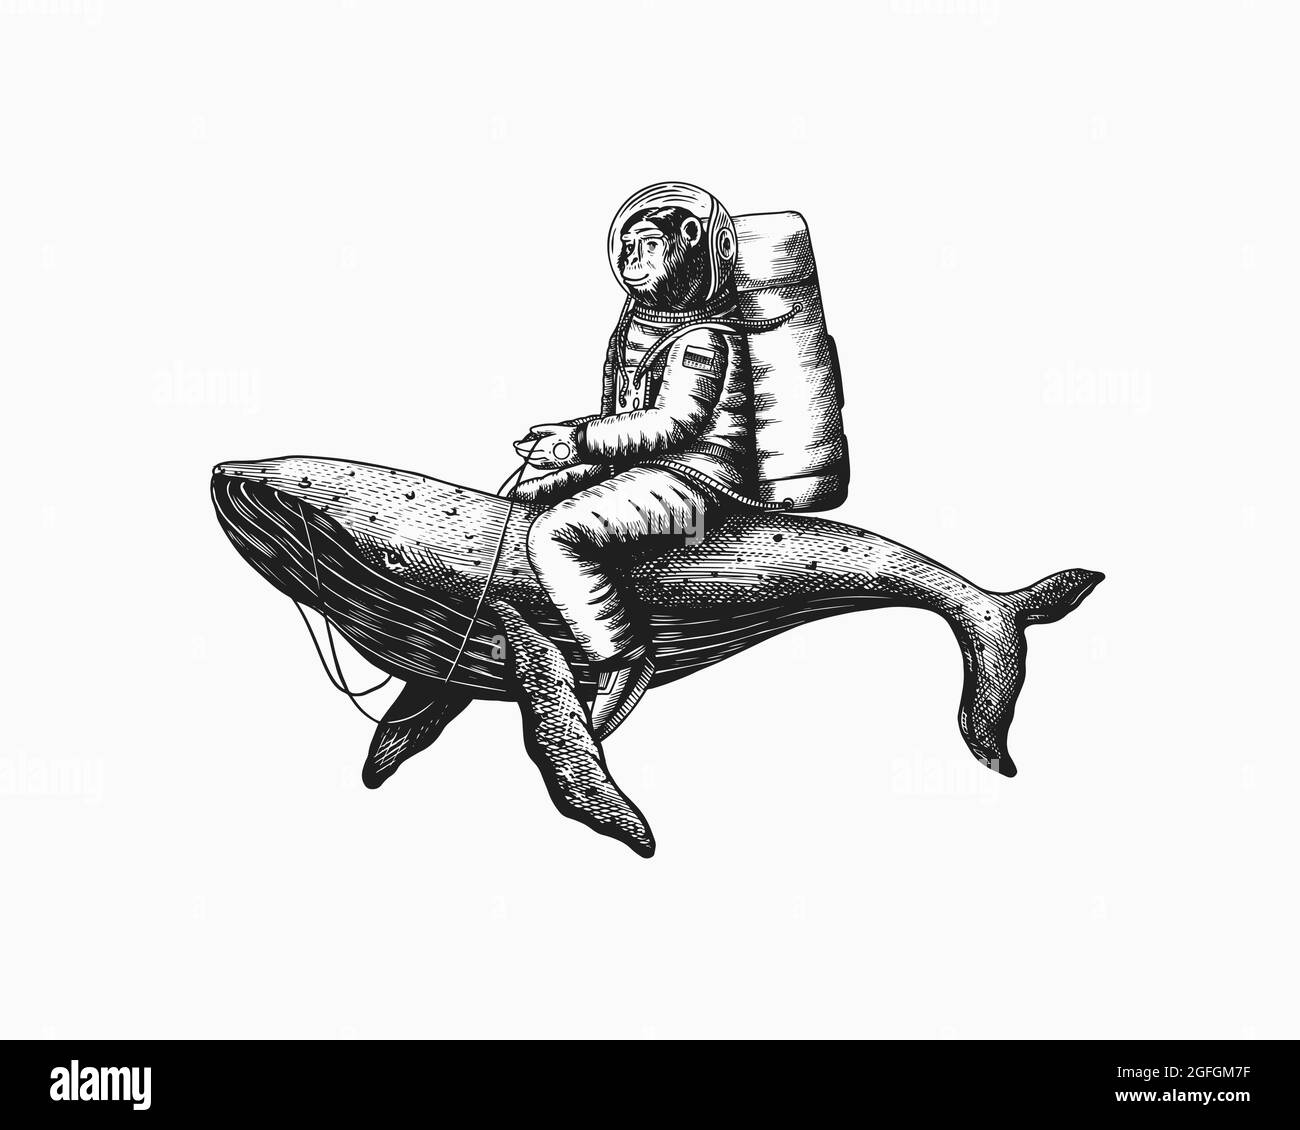 Astronaute de singe avec baleine bleue. Drôle Chimpanzee spaceman cosmonaut personnage. Espace astronomique de la galaxie. Ancien croquis monochrome gravé à la main Illustration de Vecteur